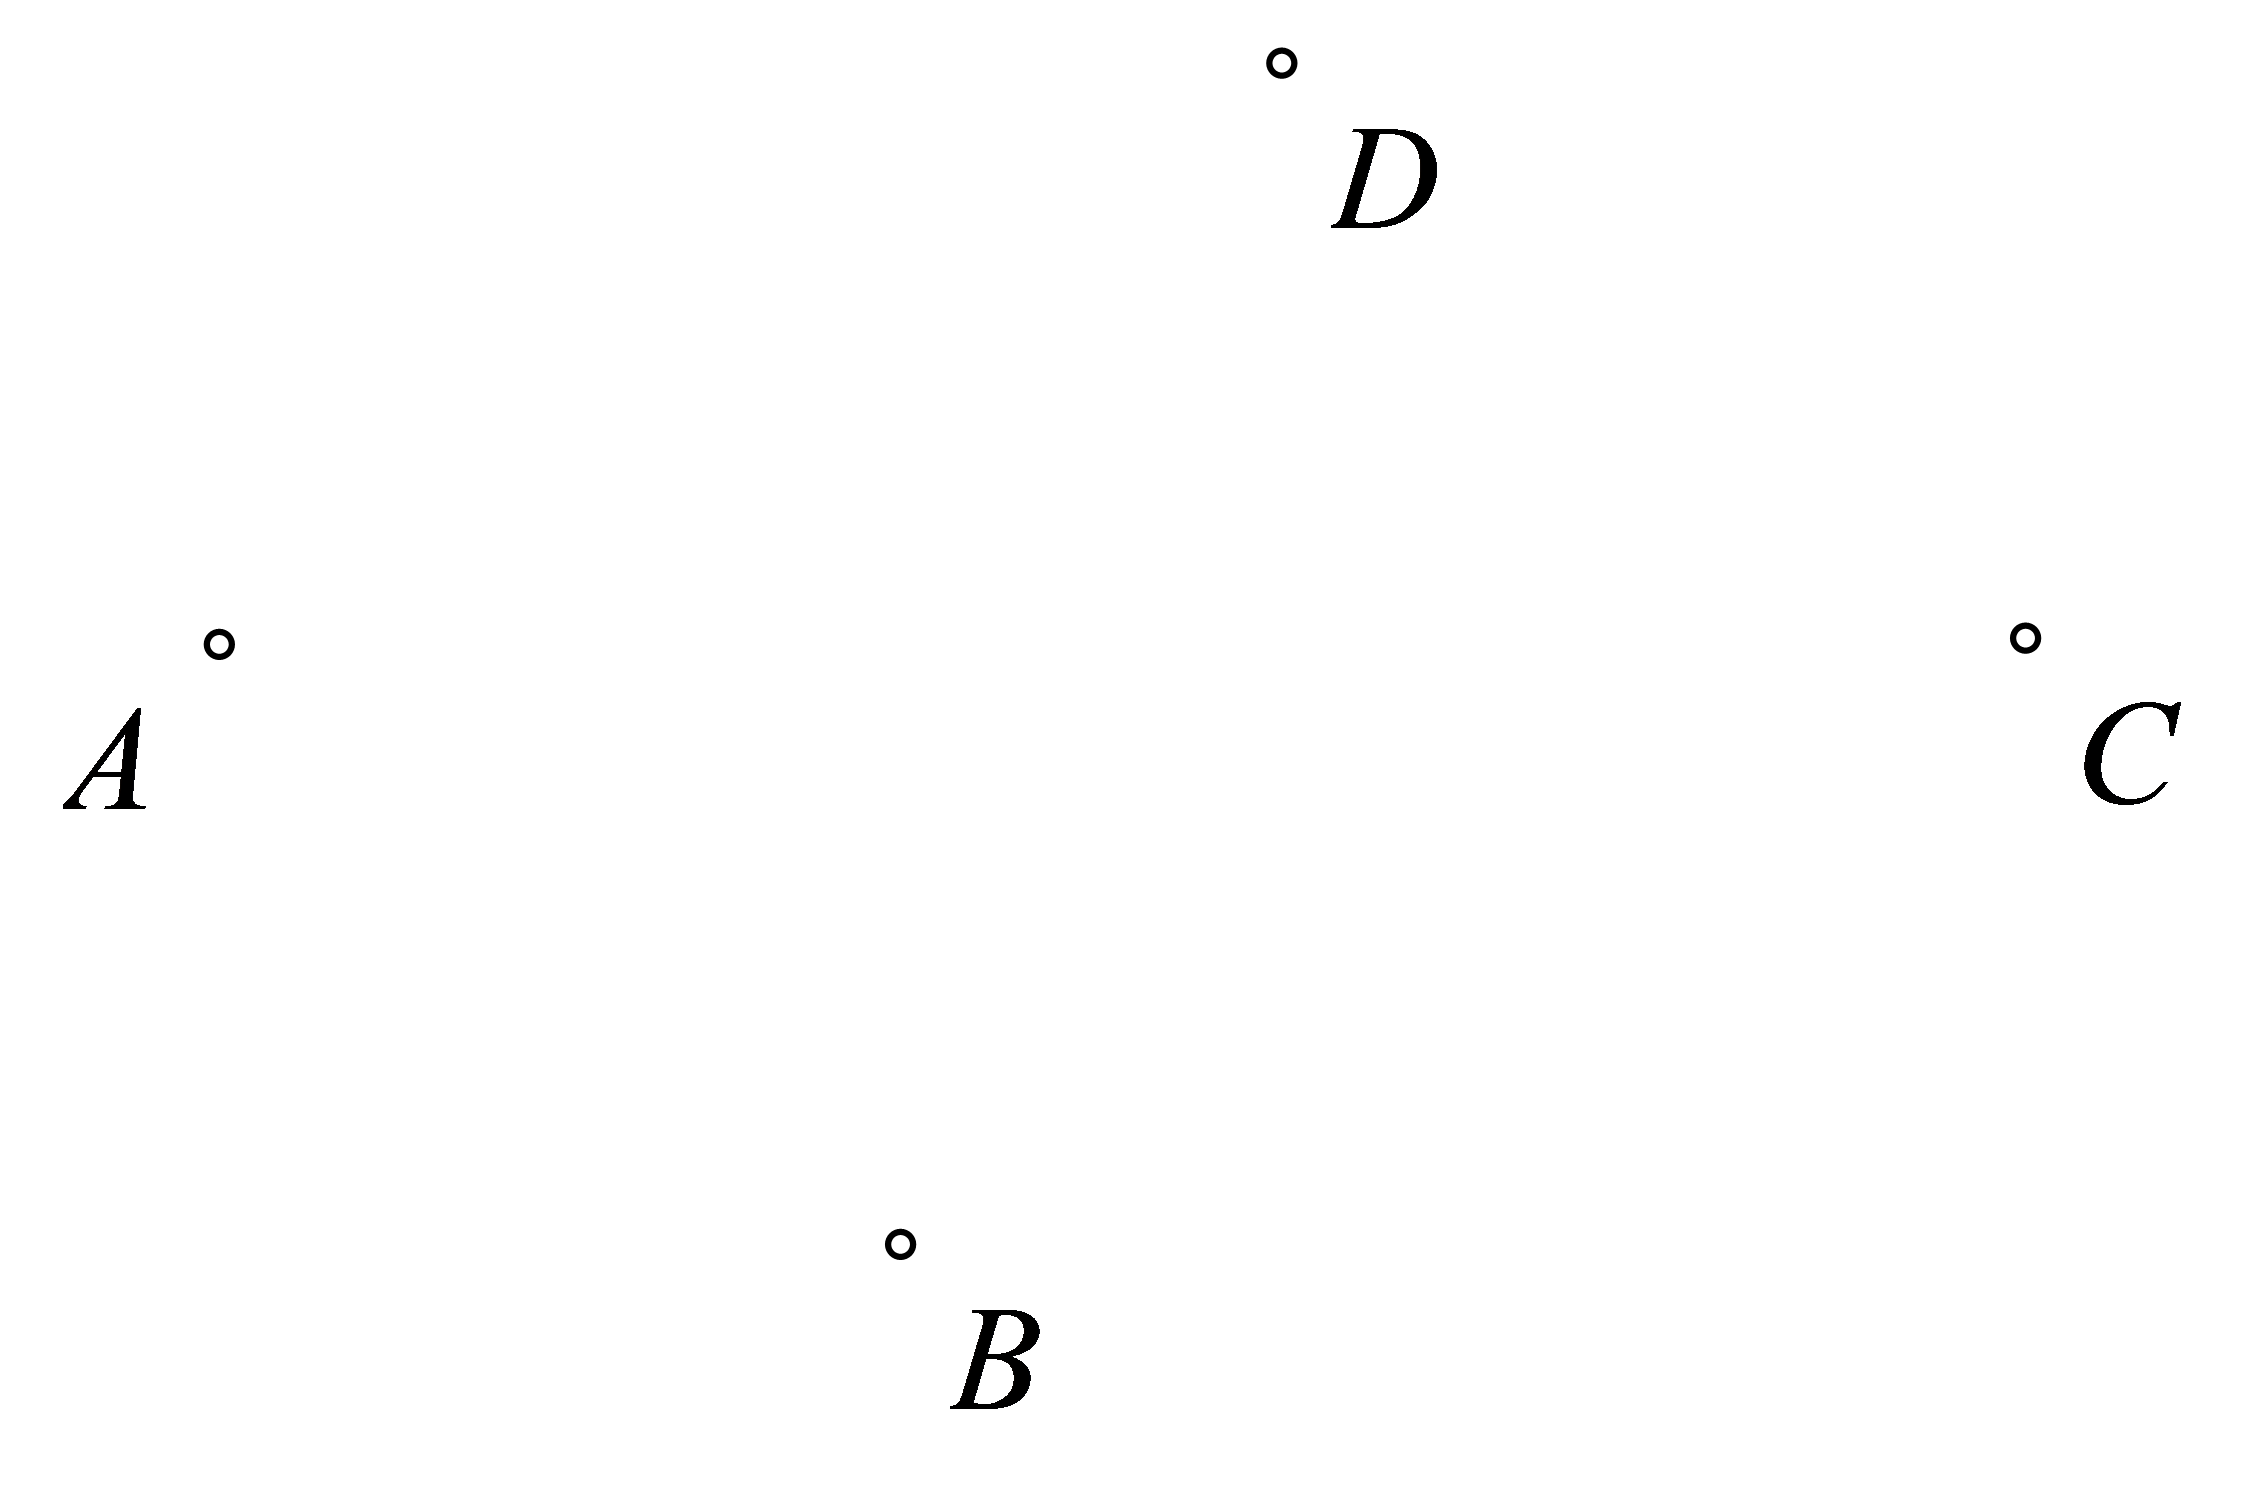 Slika prikazuje četiri različite nekolinearne točke